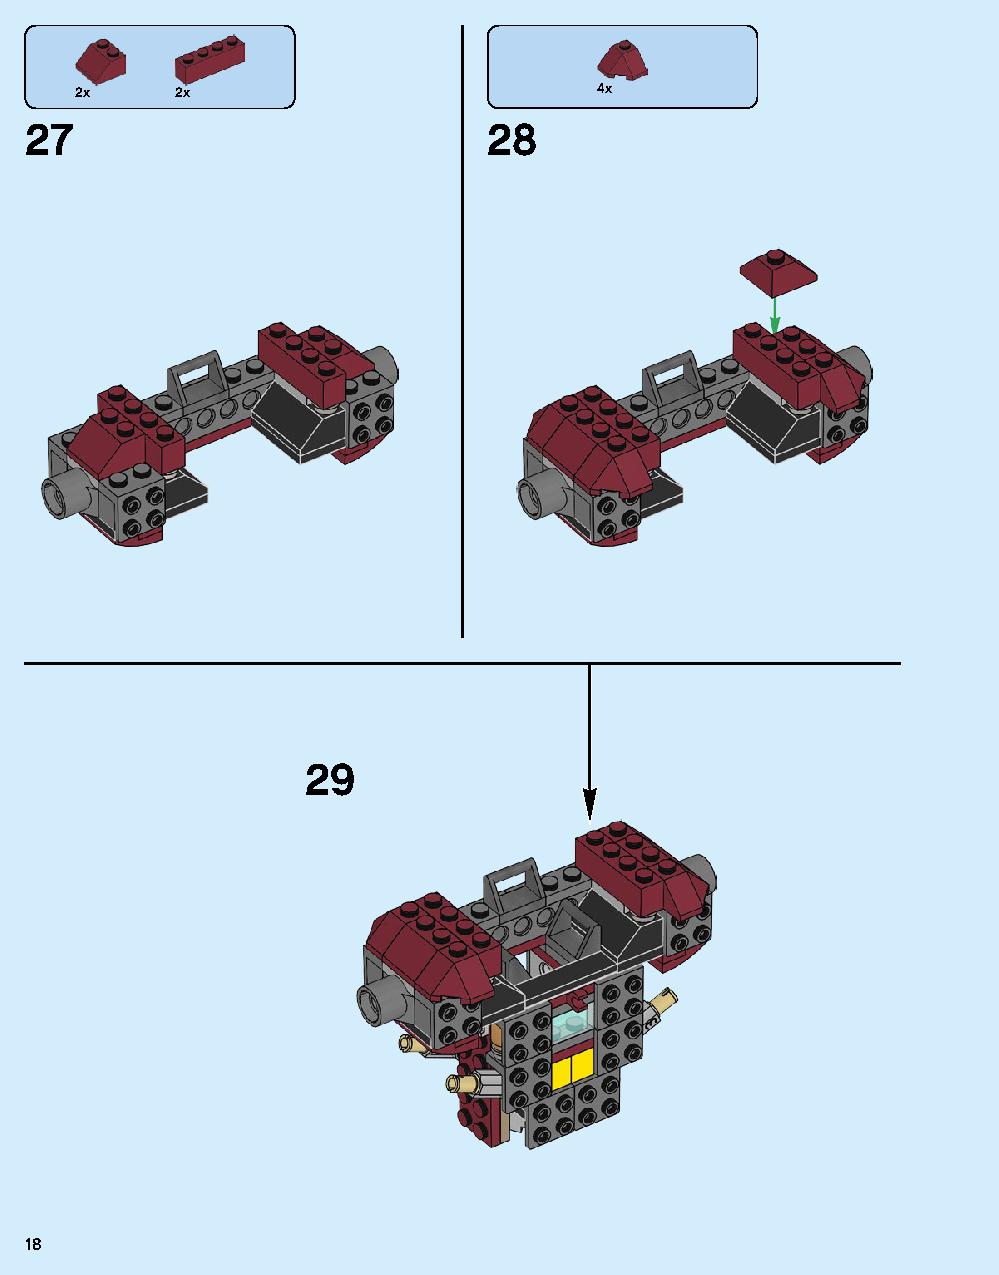 ハルクバスター：ウルトロン・エディション 76105 レゴの商品情報 レゴの説明書・組立方法 18 page